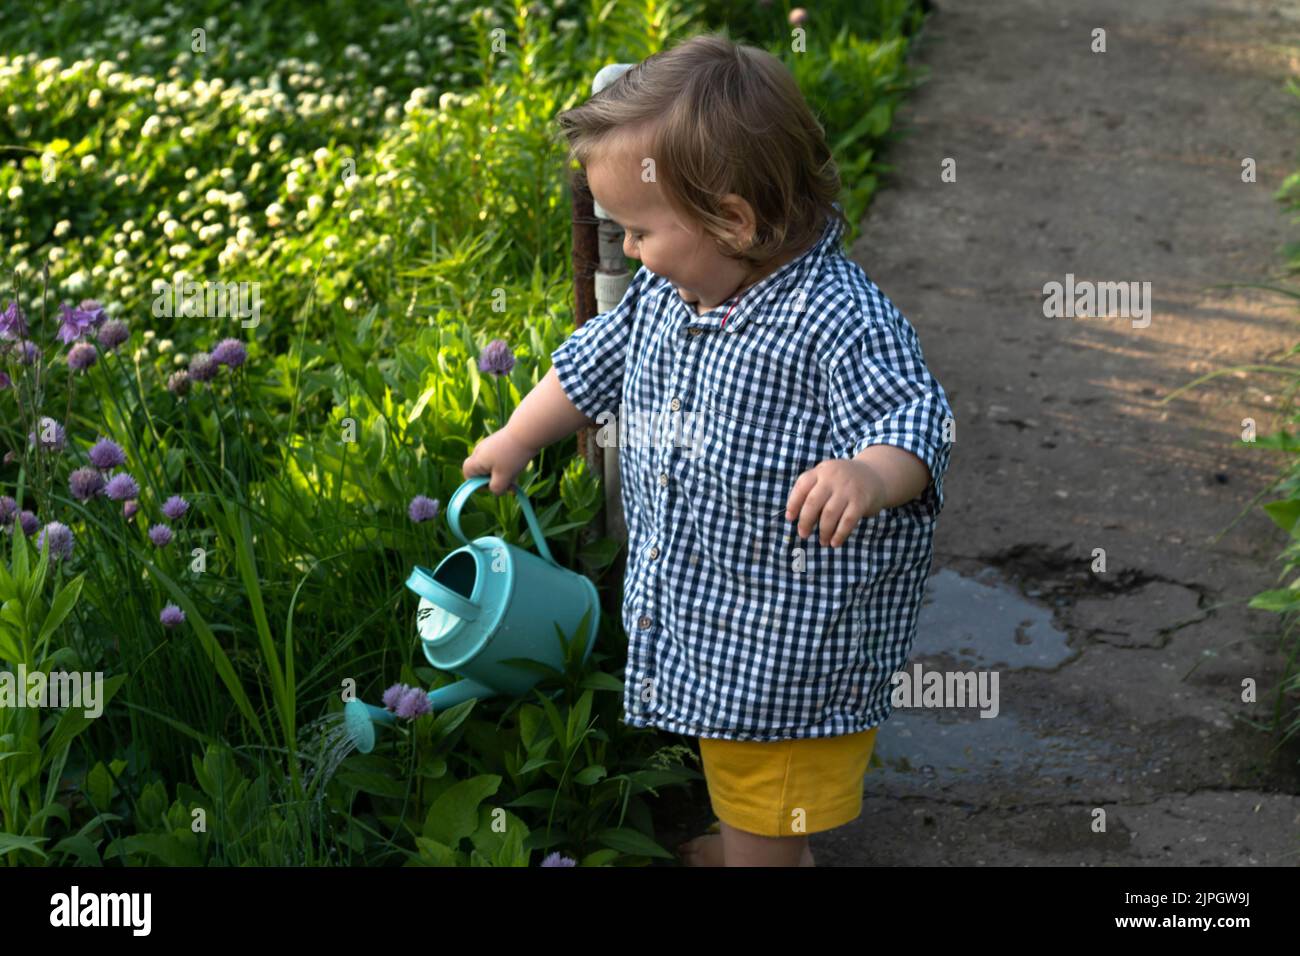 Ein kleiner Junge, der auf der Route im Garten des Hinterhofs steht, gießt Blumen aus einer Gießkannte. Das Konzept der Sommeraktivitäten im Garten, Sommersaison, Gartenarbeit, Pflanzen- und Blumenanbau. Stockfoto